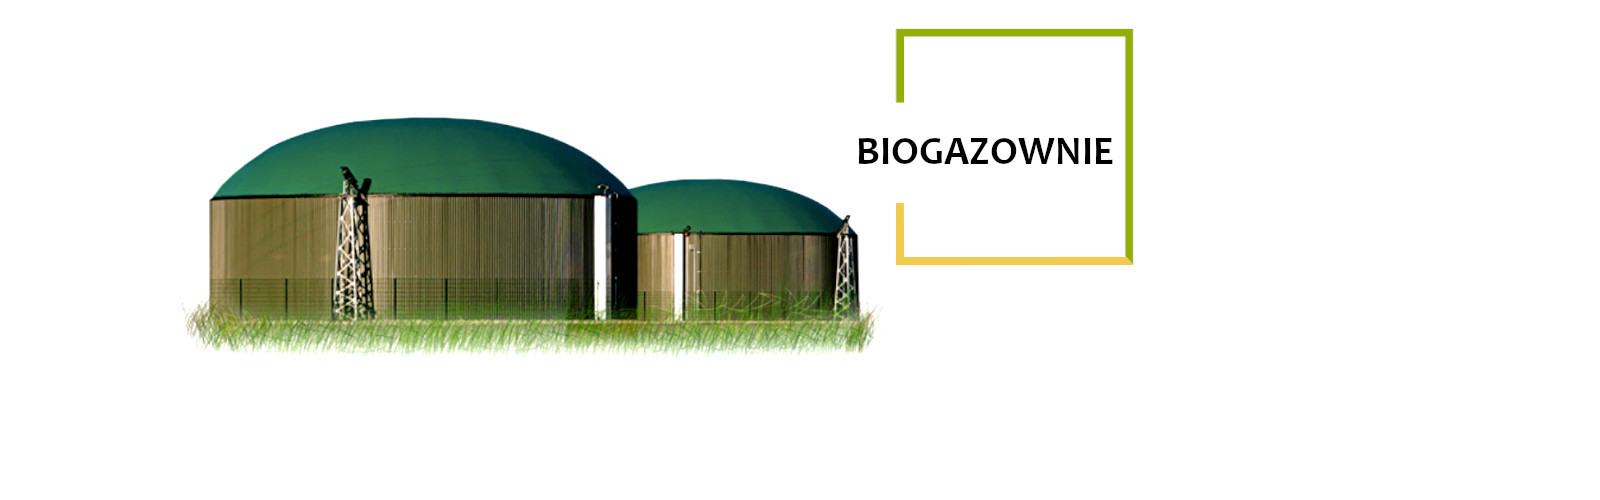 biogazownie, biogaz